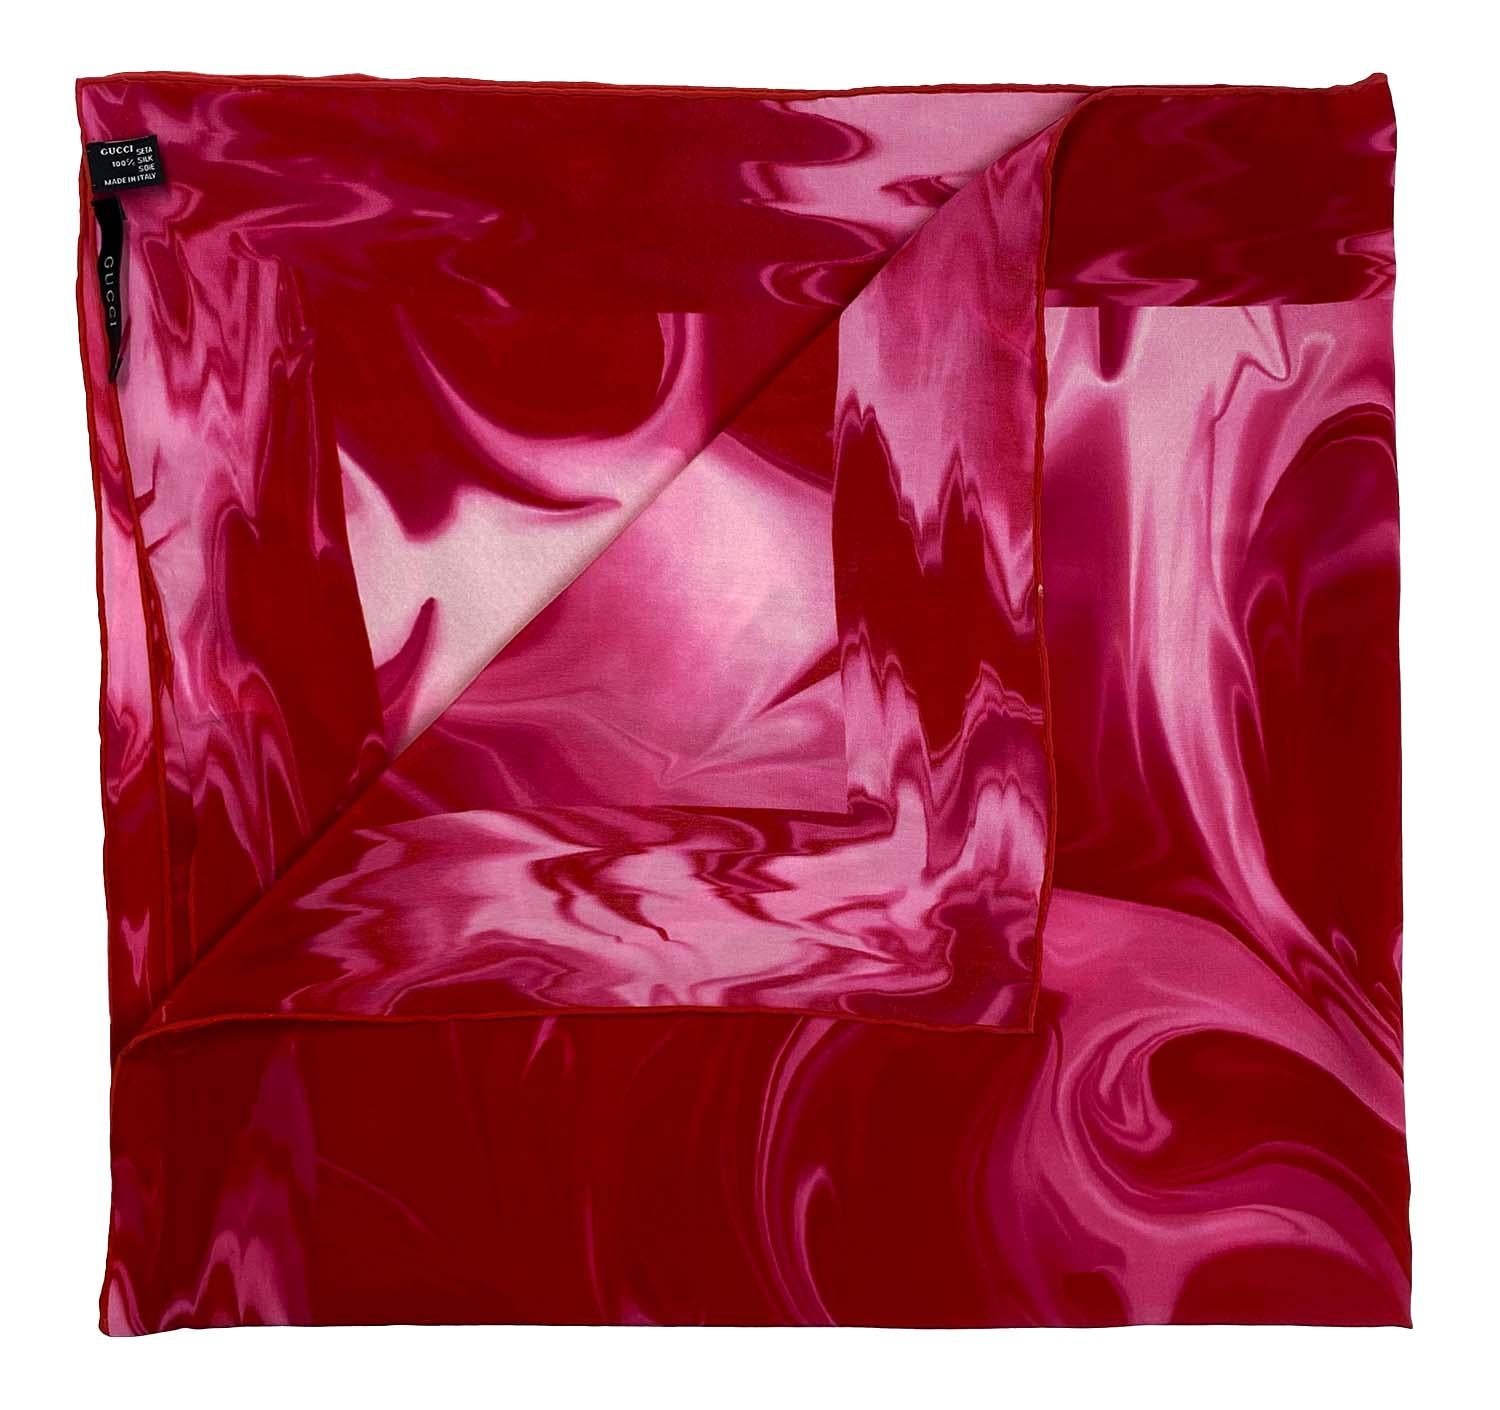 Présentation d'un rare foulard Gucci imprimé en lave rose, dessiné par Tom Ford. Le motif de la lave a été présenté pour la première fois lors du défilé masculin du printemps/été 2001 et a été largement utilisé dans la mode féminine. Cet imprimé